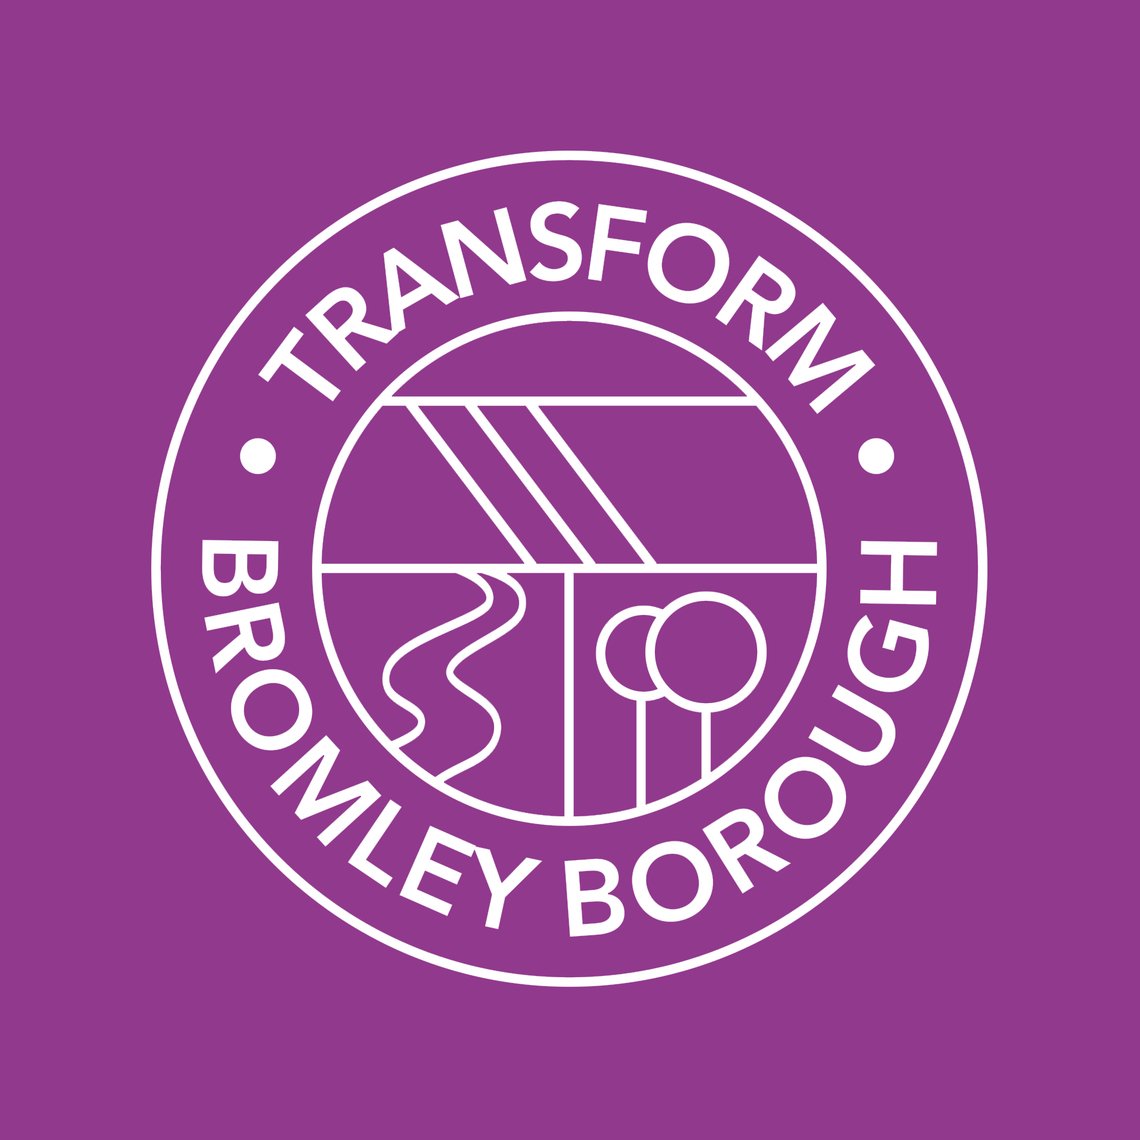 Transforming Bromley Borough logo